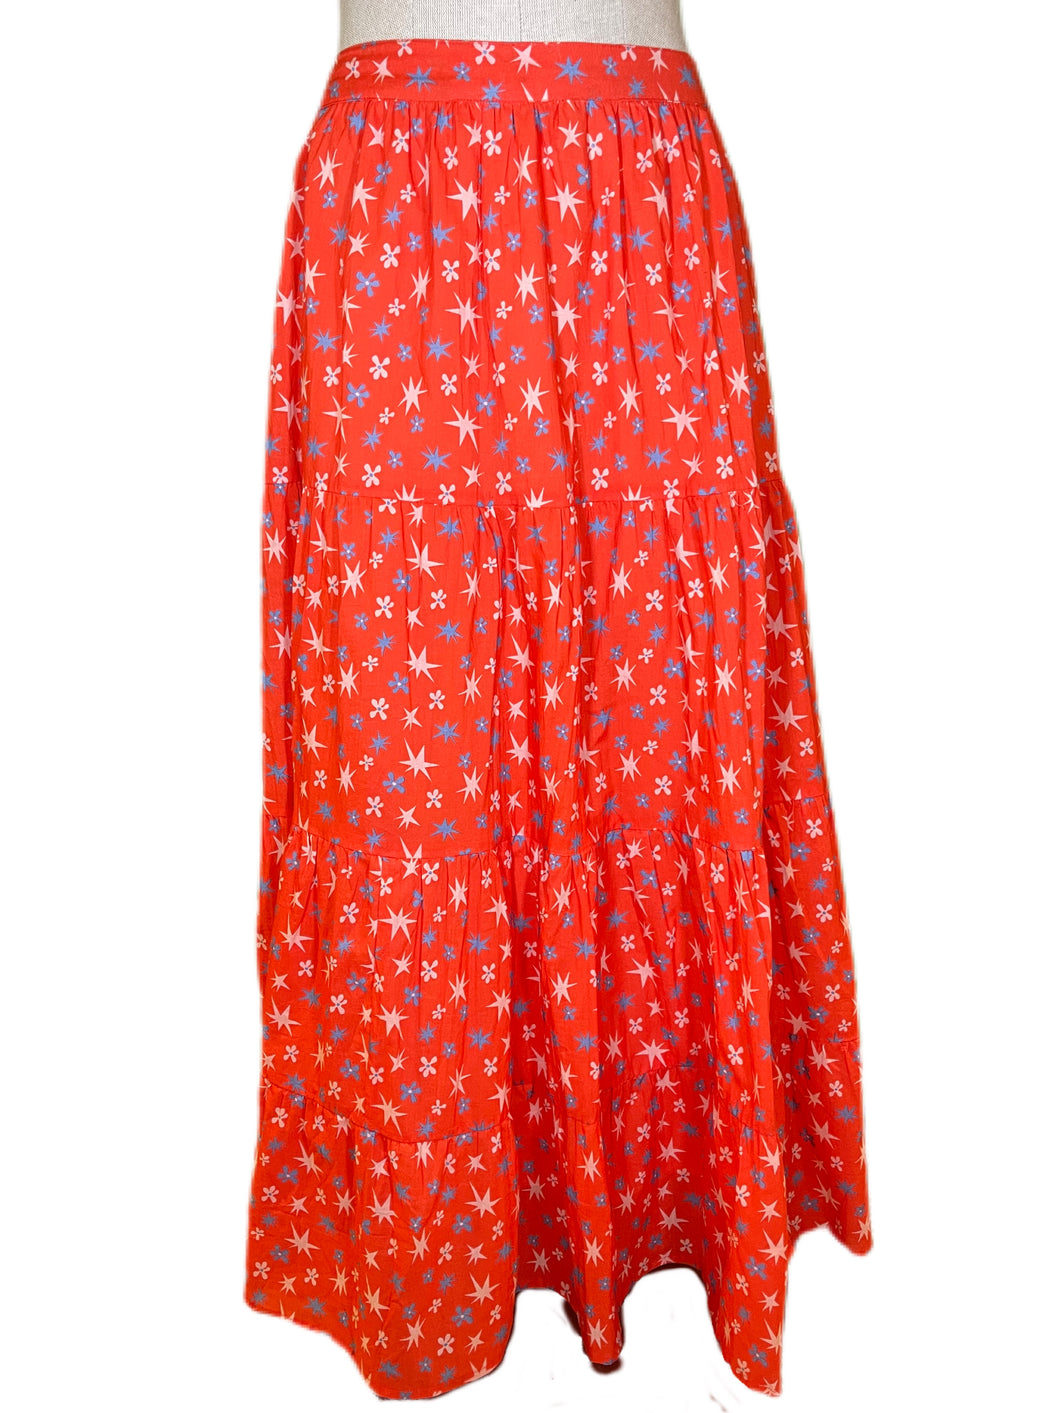 Charlette Skirt -Red Floral Burst